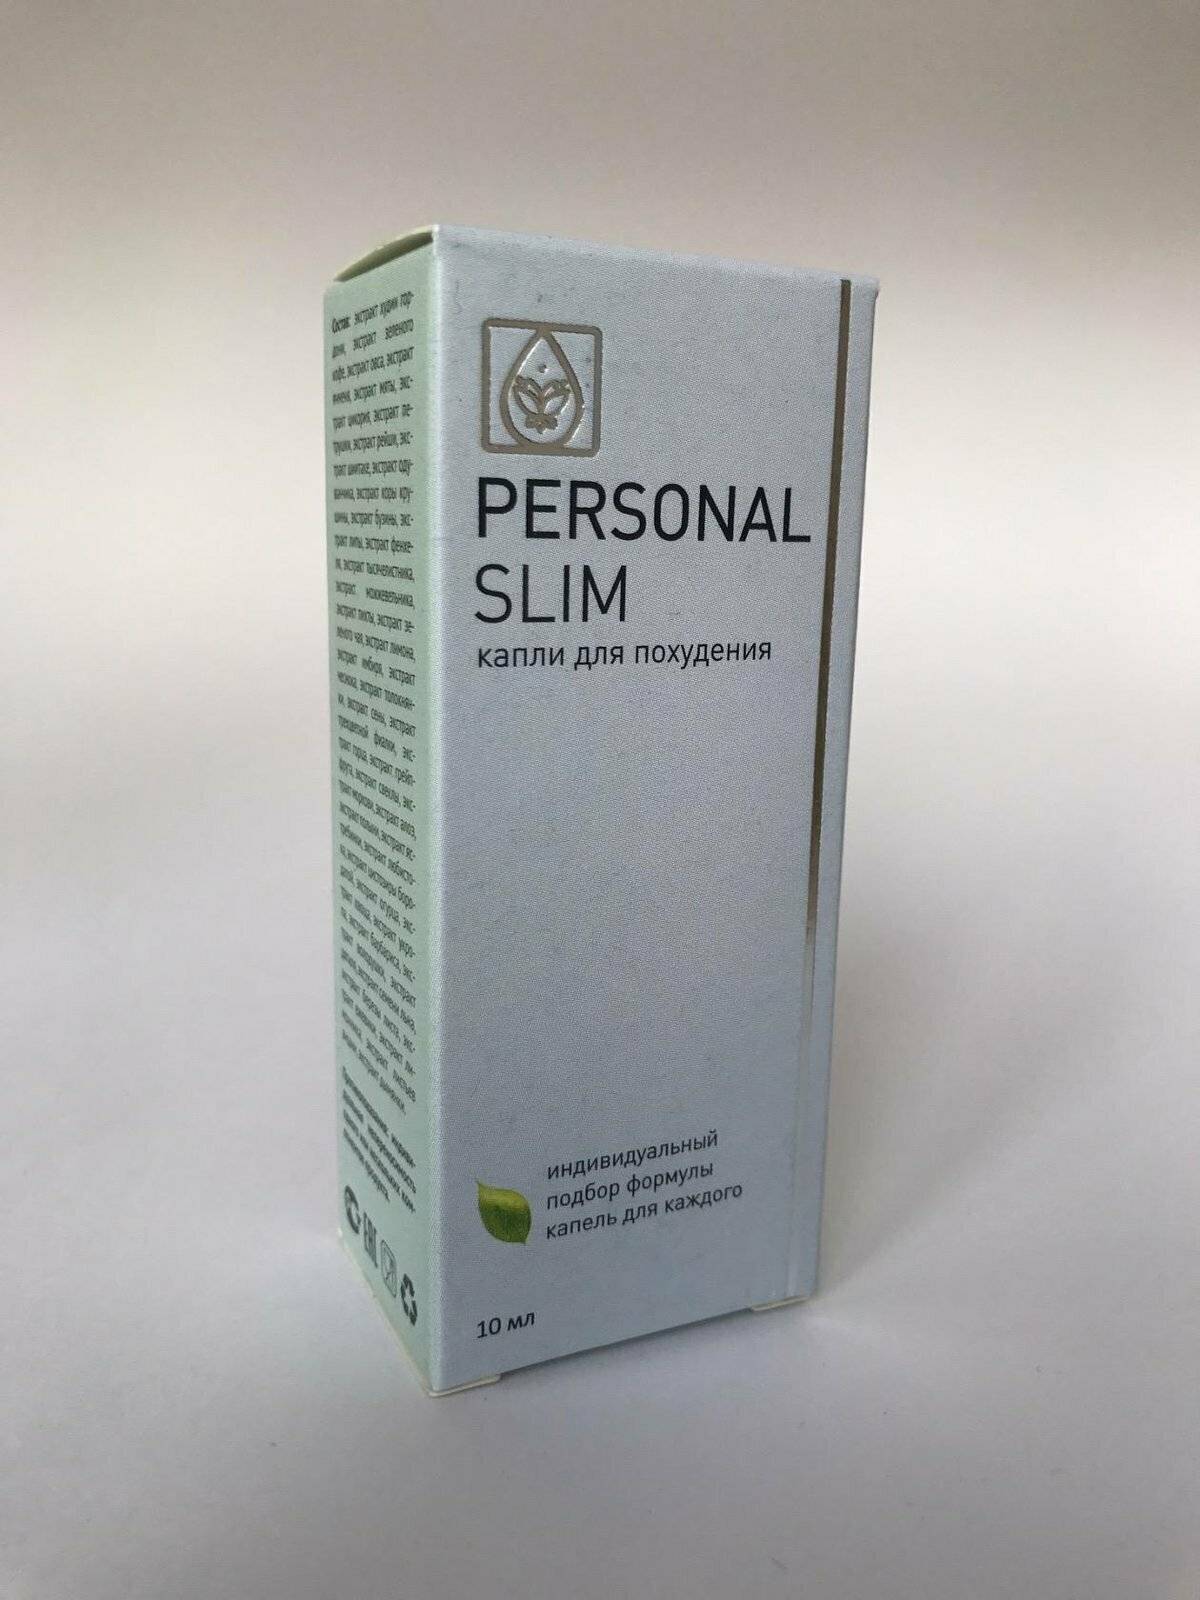 Капли персонал слим для похудения, как правильно принимать personal slim для снижения веса, отзывы и результаты | alkopolitika.ru